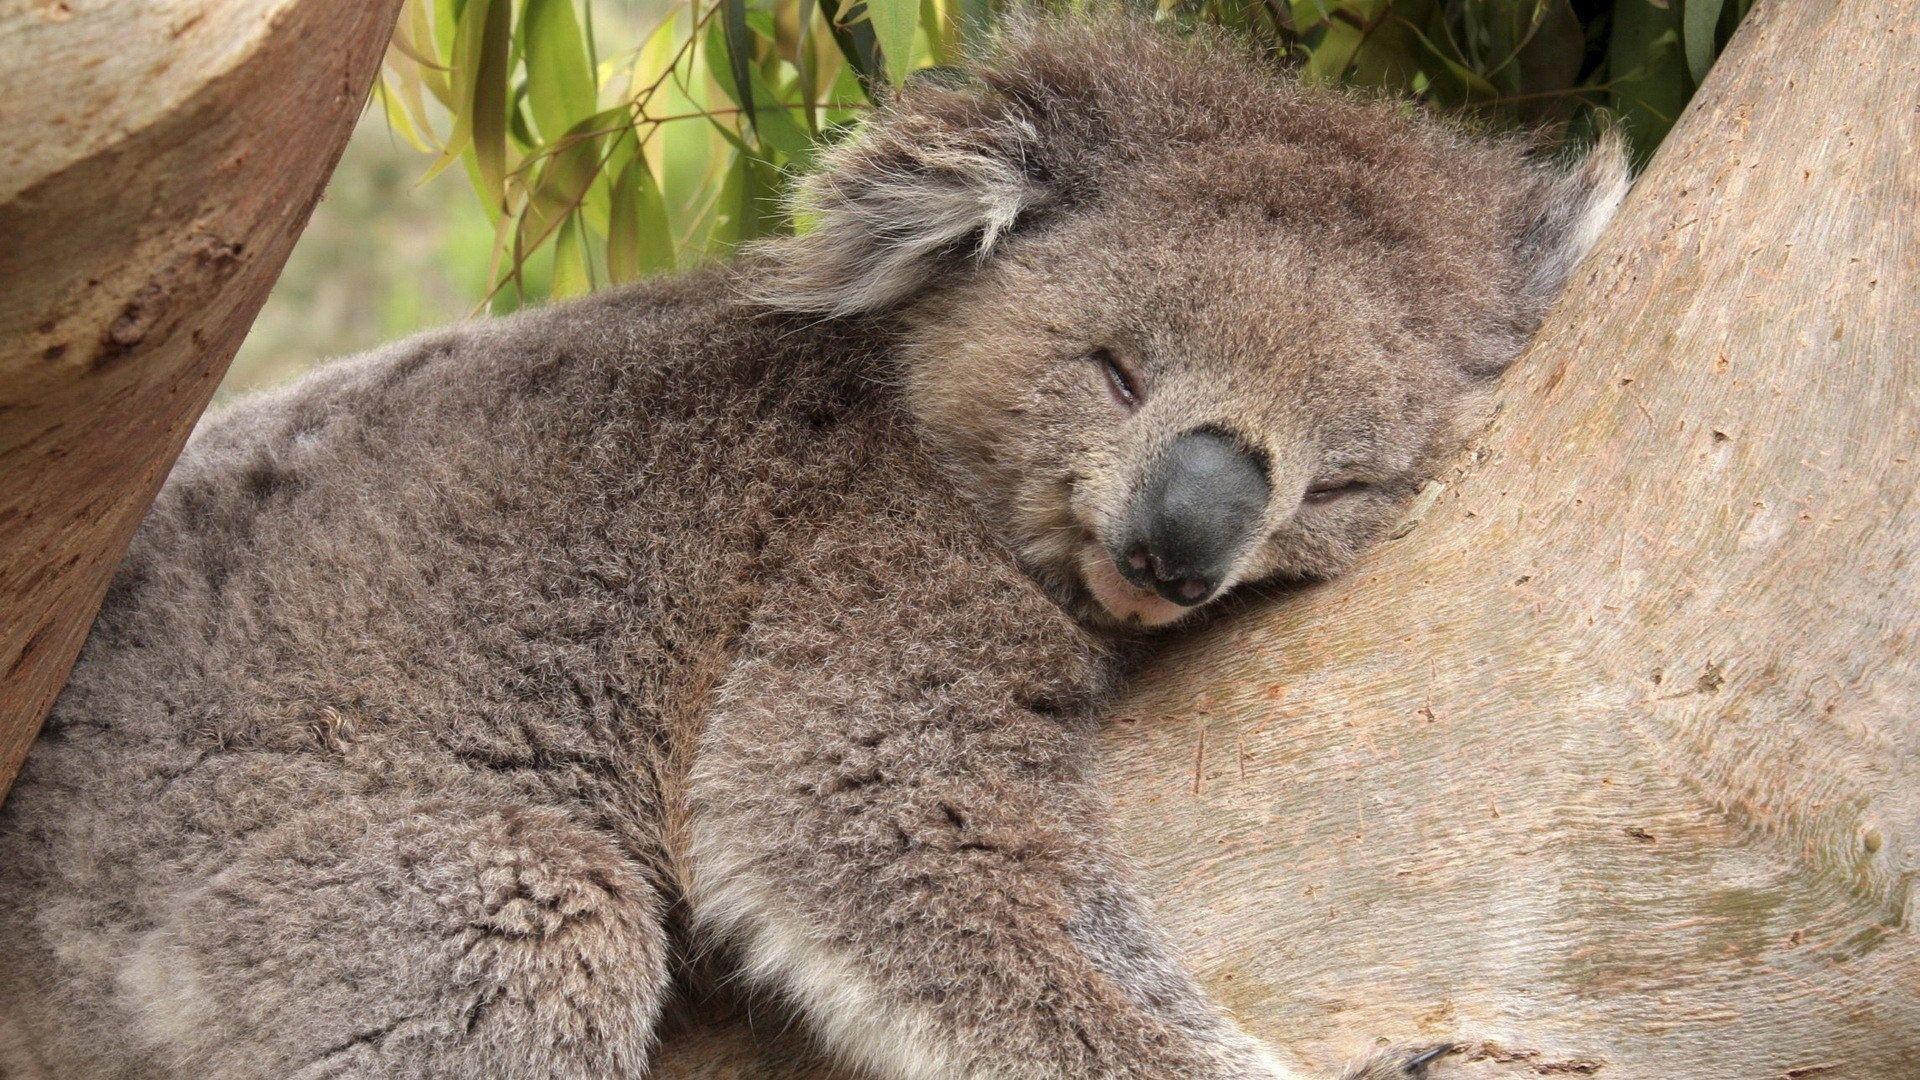 Fonds d&;écran Koala, tous les wallpaper Koala